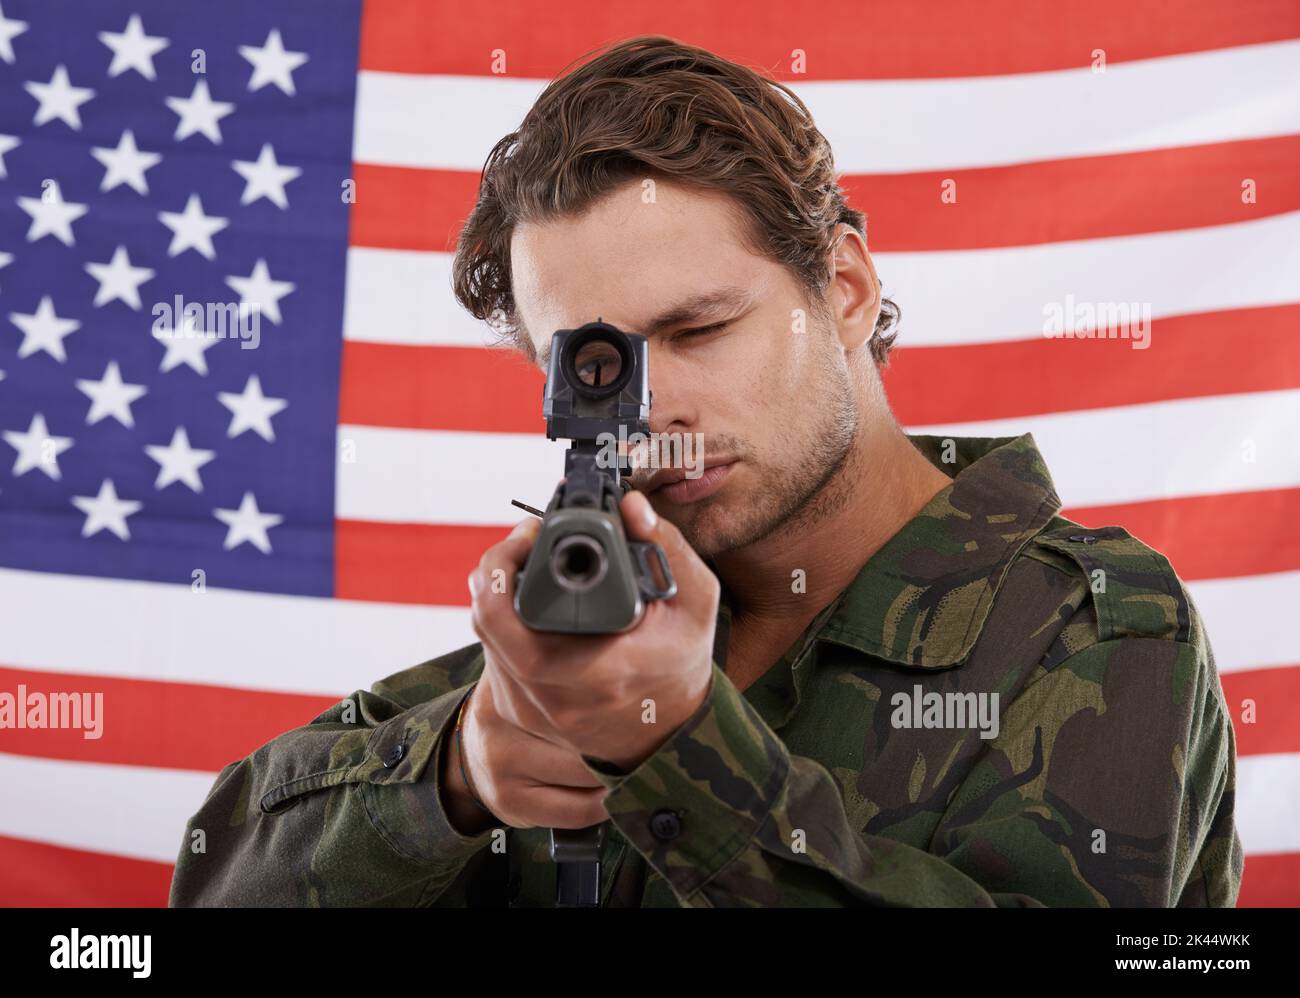 Du bist in seinen Augen. Ein amerikanischer Soldat zeigt mit seinem Gewehr auf Sie. Stockfoto